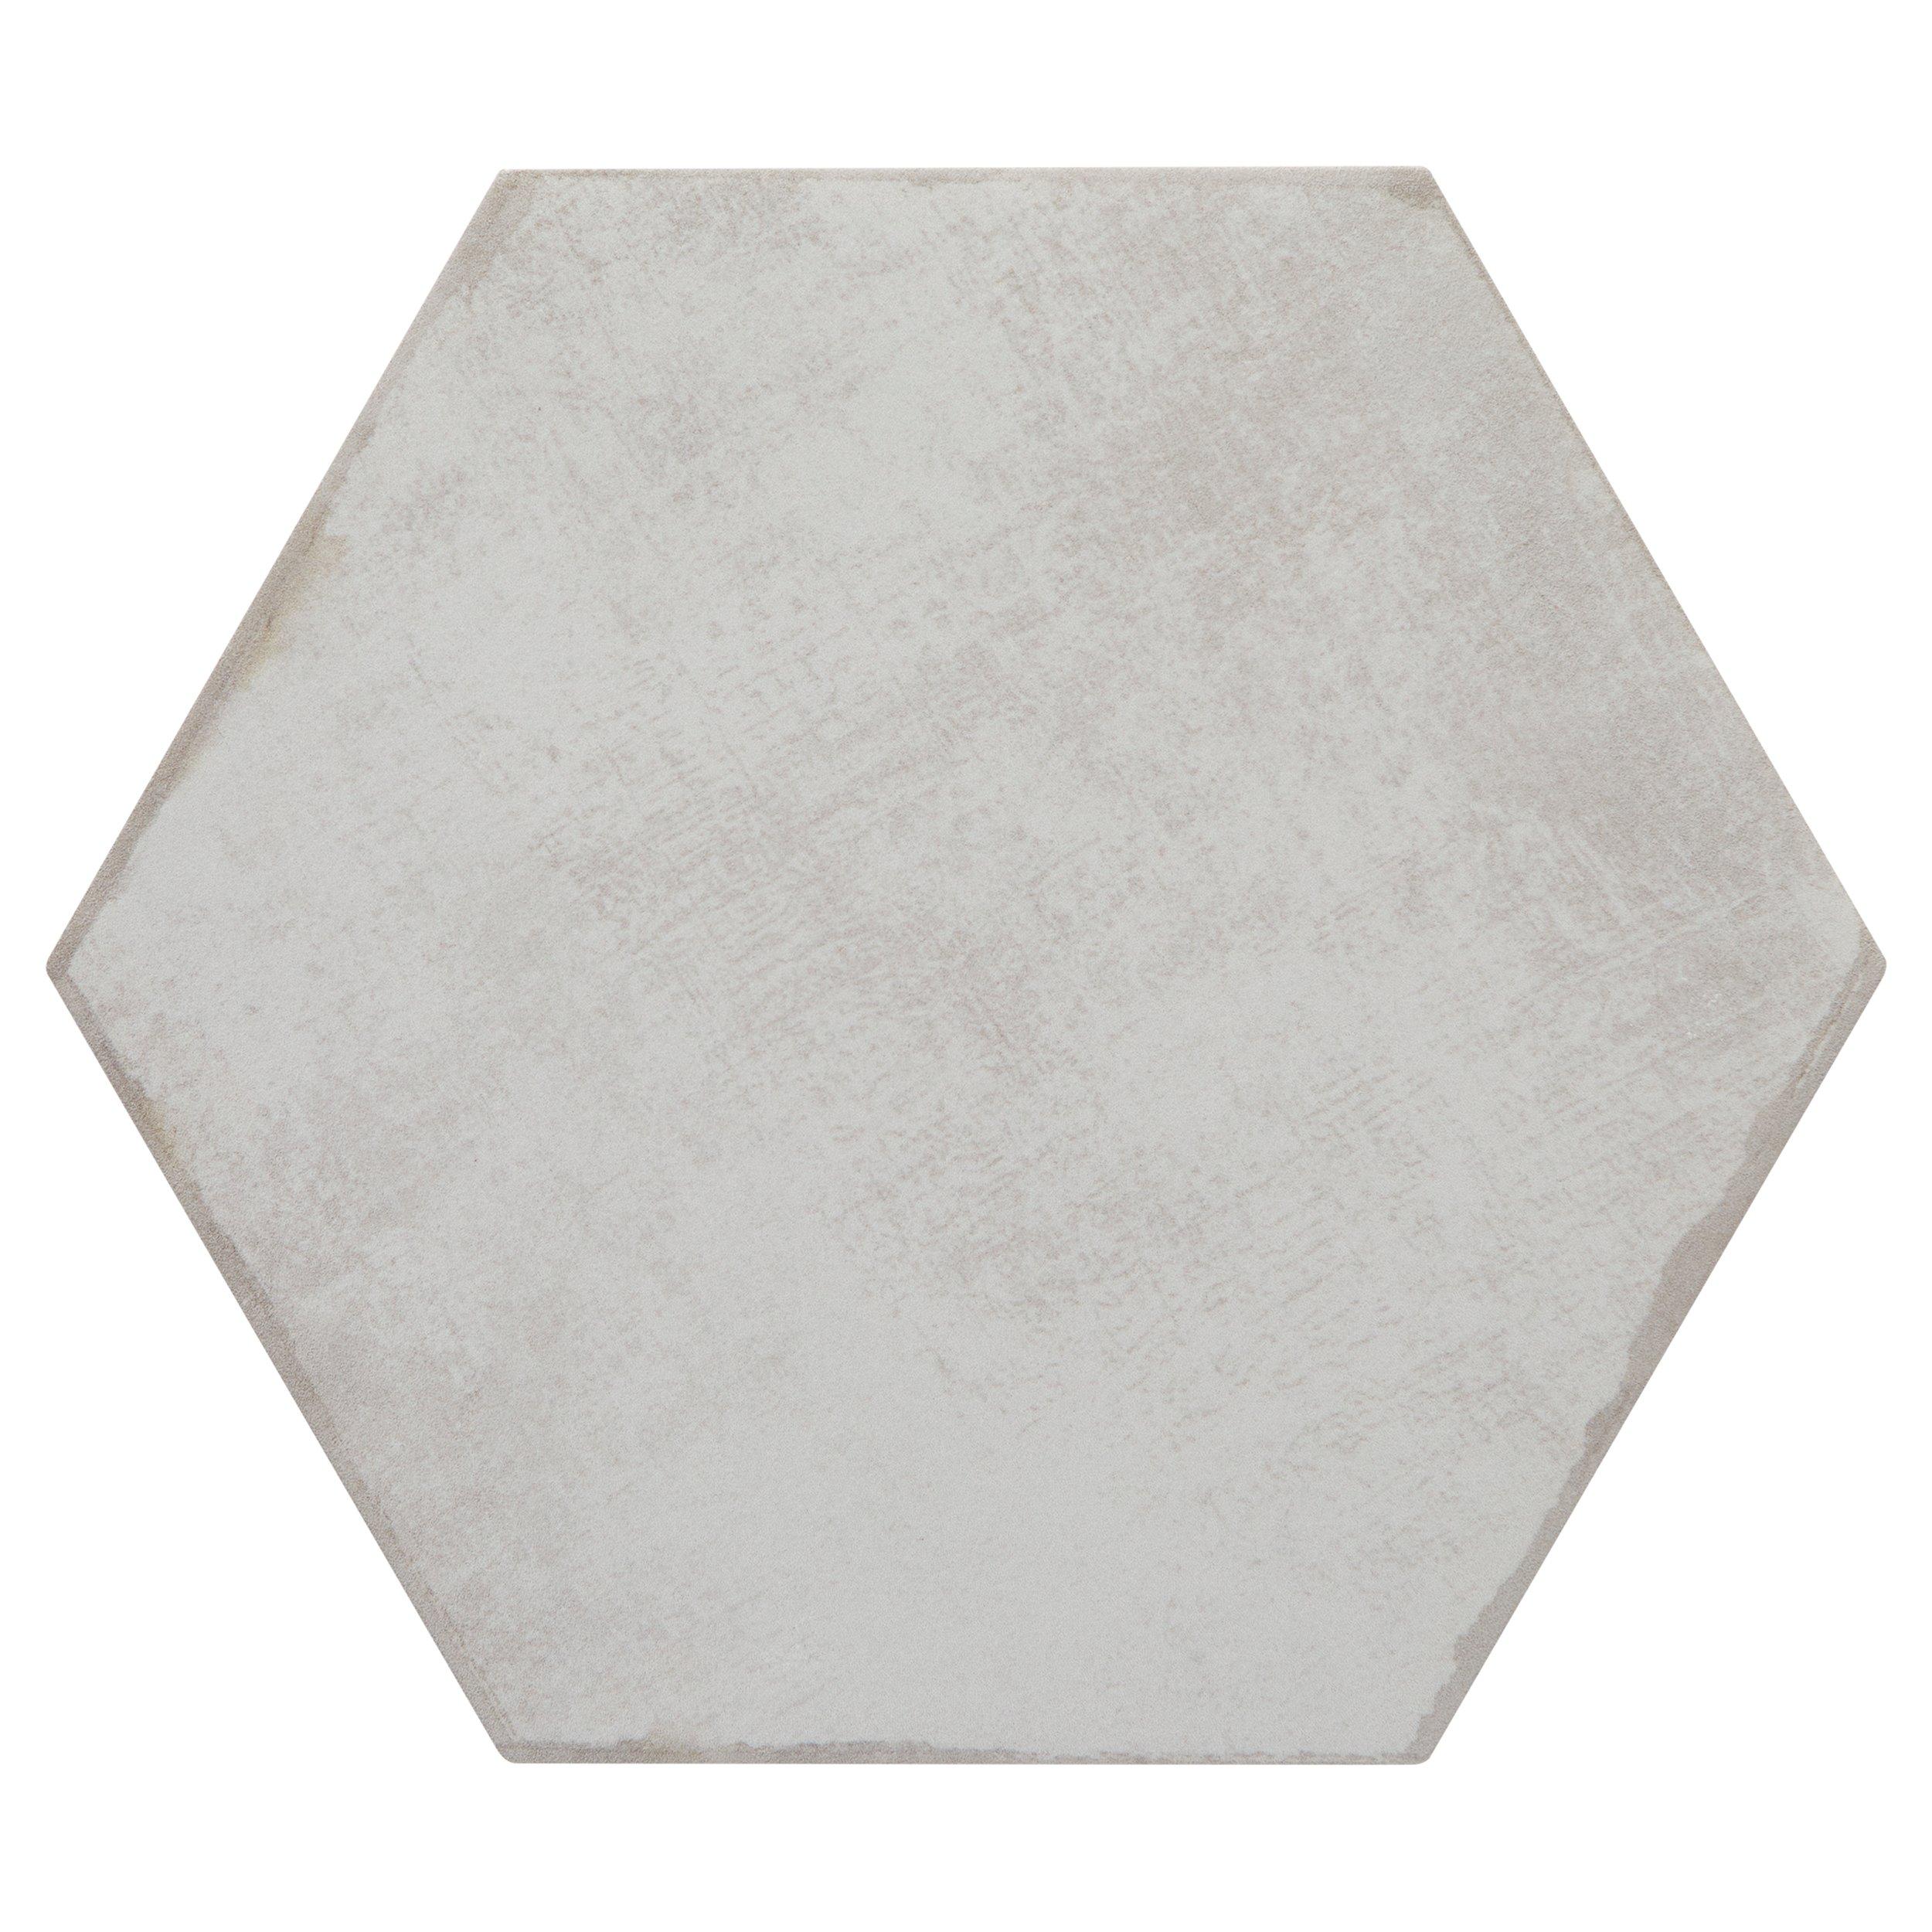 Cemento Hexagon Matte Porcelain Tile - Gray Tile | Floor and Decor